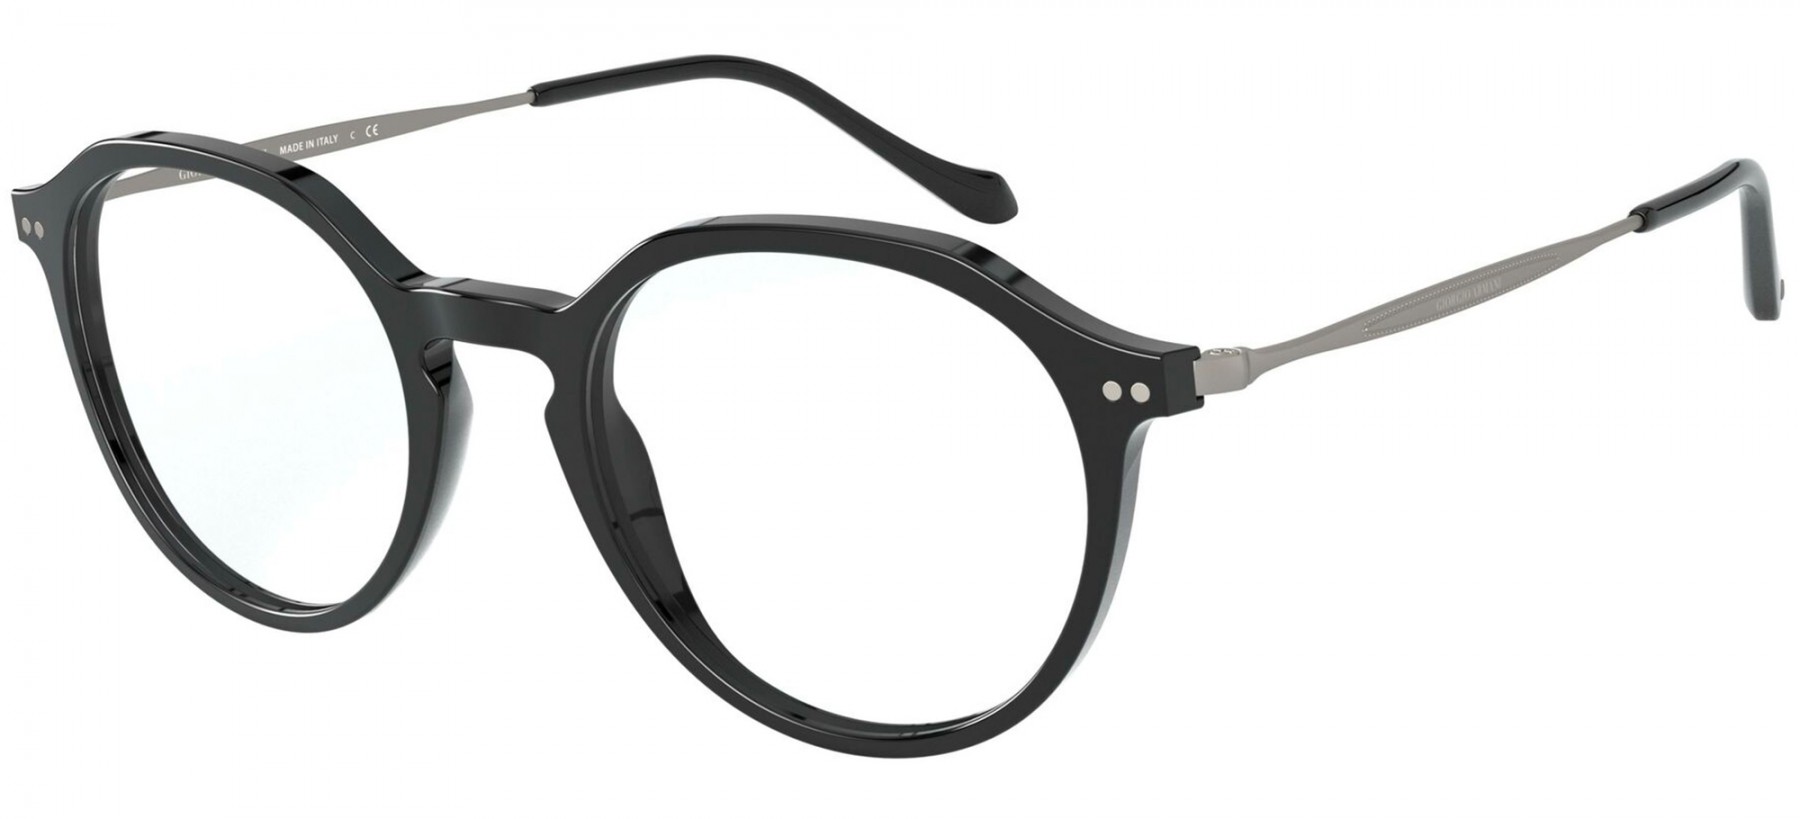 Giorgio Armani 7191 5001 - Oculos de Grau